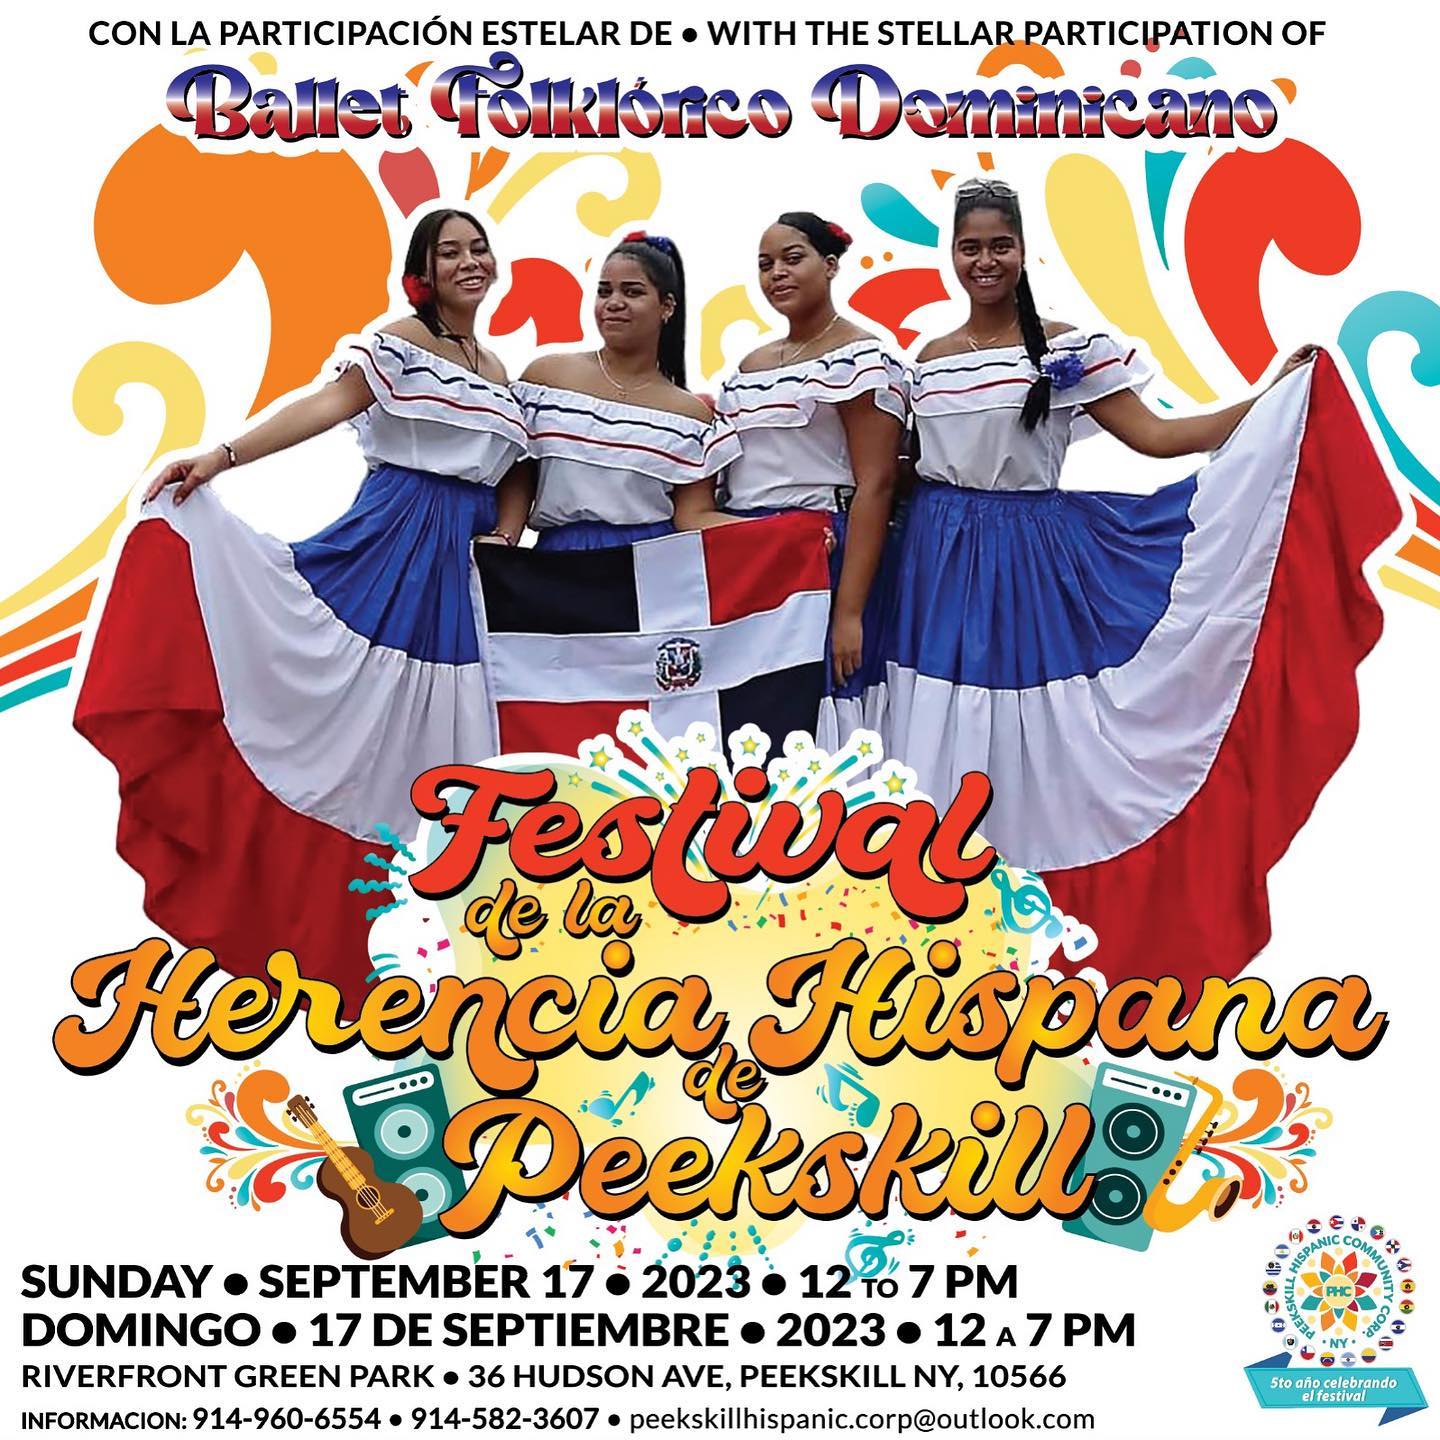 Flier for the Peekskill Hispanic Heritage Festival